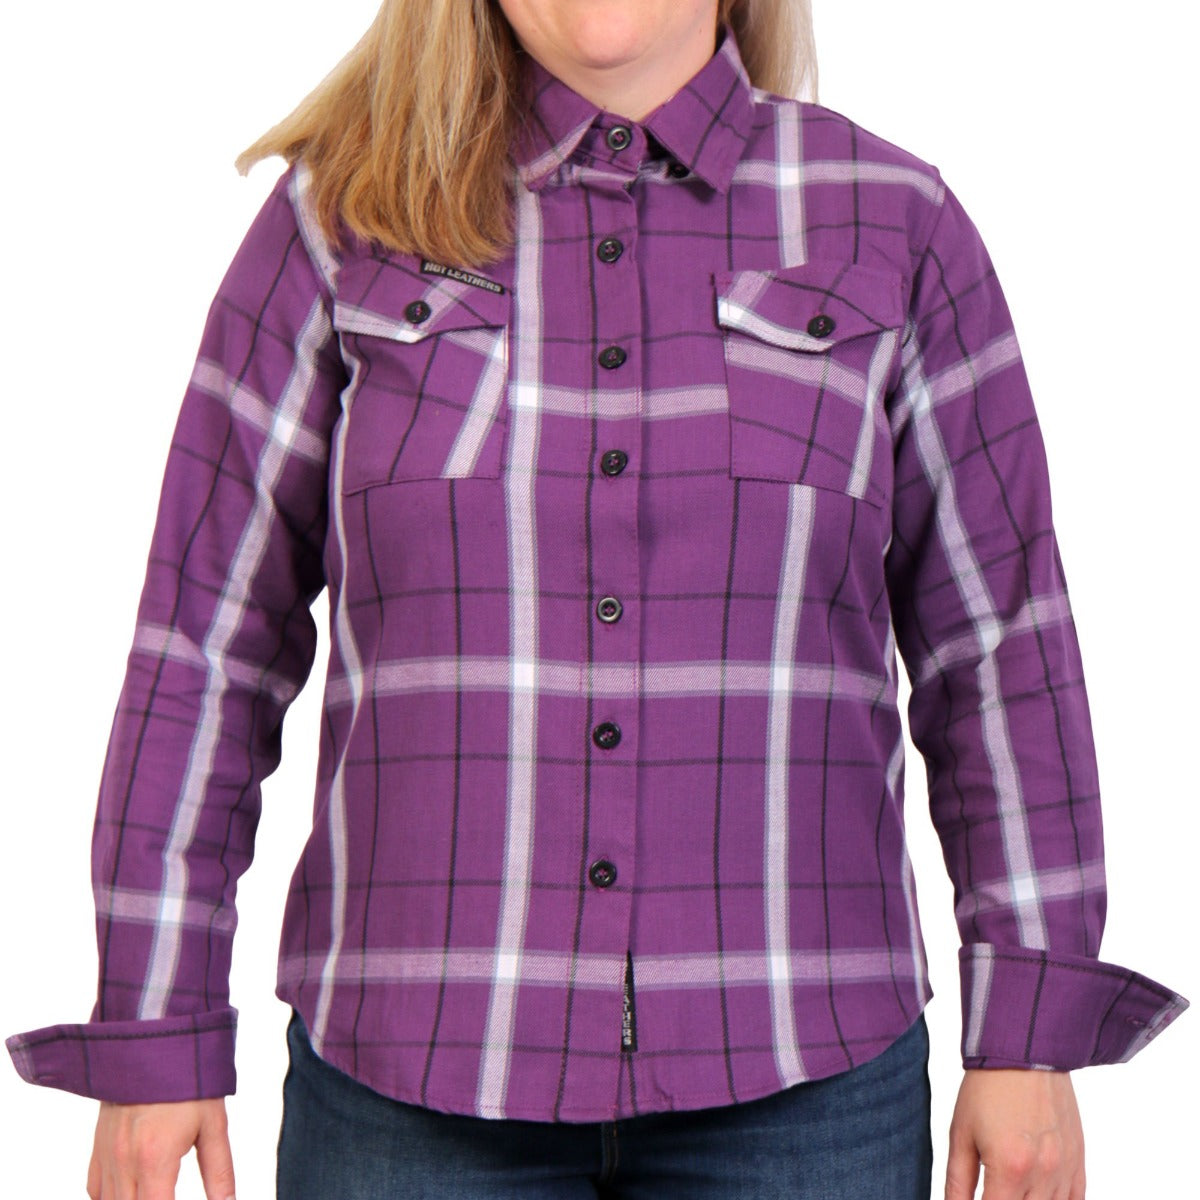 Hot Leathers Women's Flannel Long Sleeve Purple, White & Black